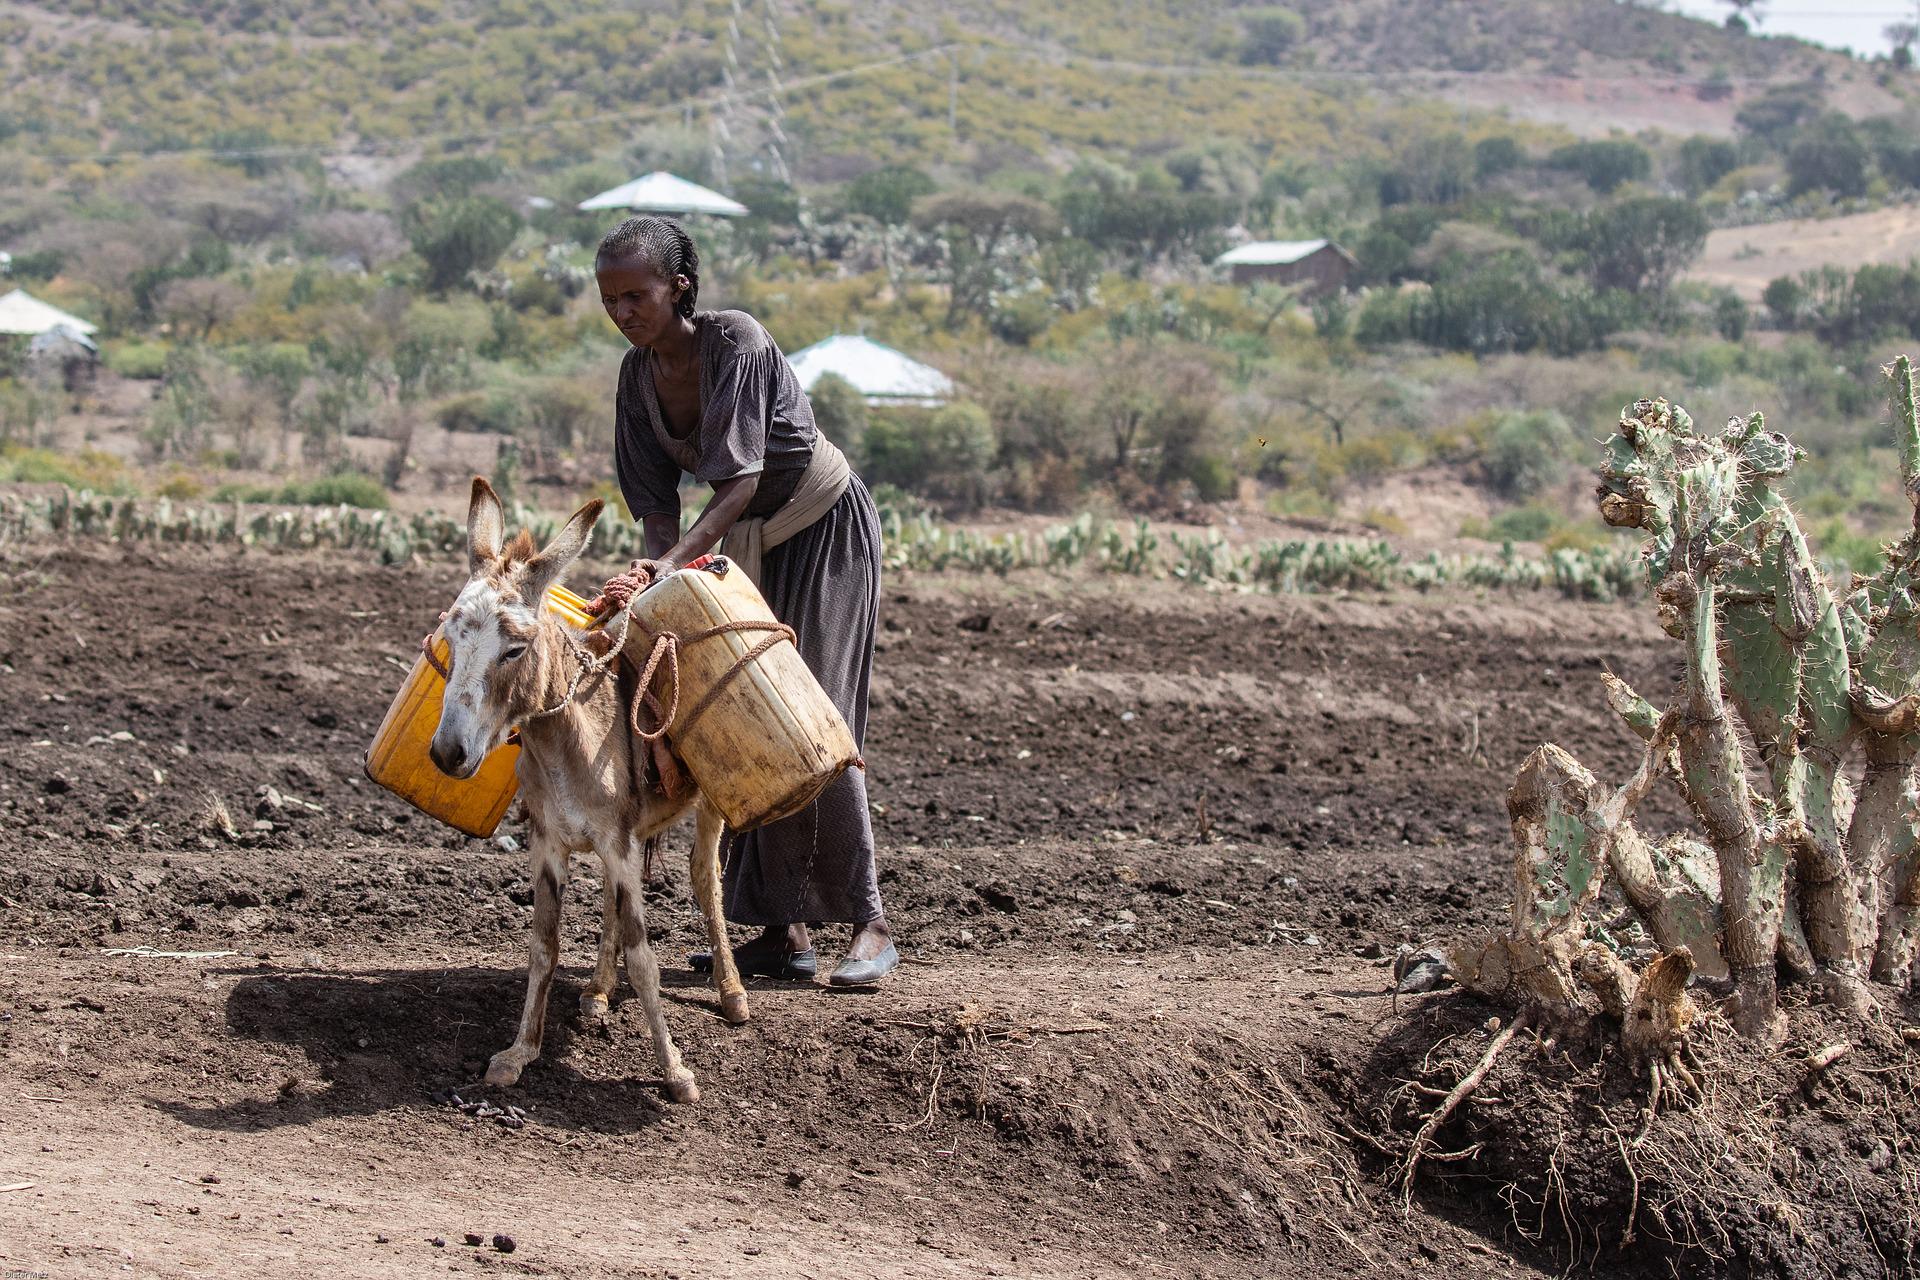 Kenia busca mitigar la sequía a través de la educación agraria